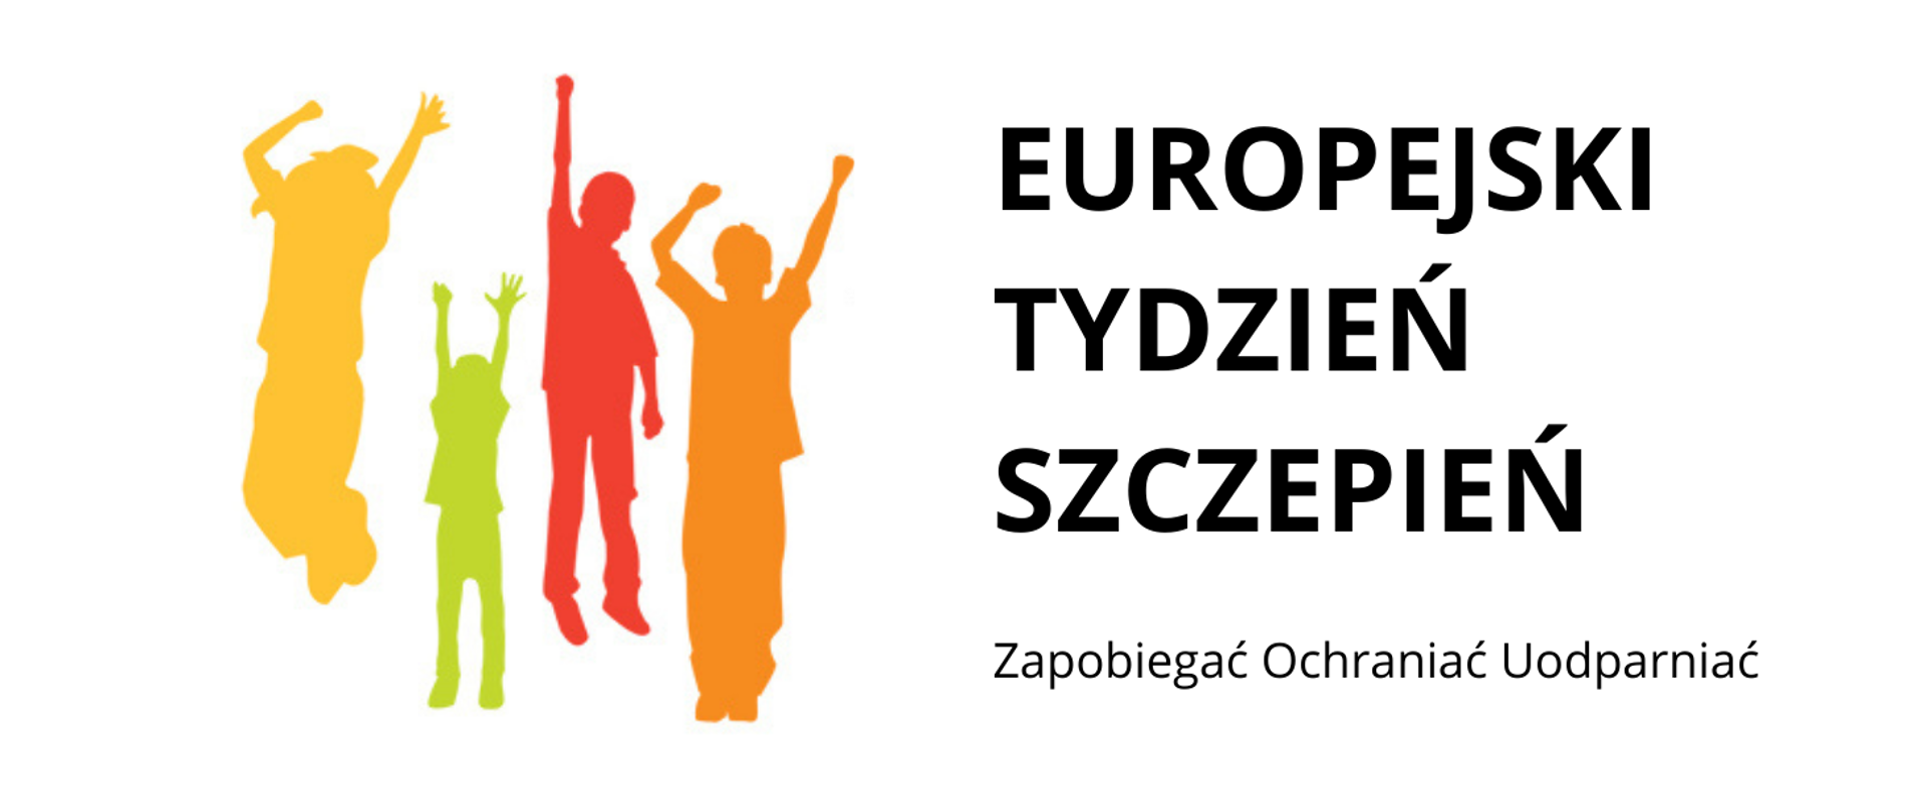 Z lewej strony zdjęcia zamieszczono 4 cienie ludzi w kolorze żółtym, zielonym , pomarańczowym i czerwonym z uniesionymi rękami w geście radości. Z prawej zaś strony zamieszczono czarny napis "EUROPEJSKI TYDZIEŃ SZCZEPIEŃ. Zapobiegać Ochraniać Uodparniać"